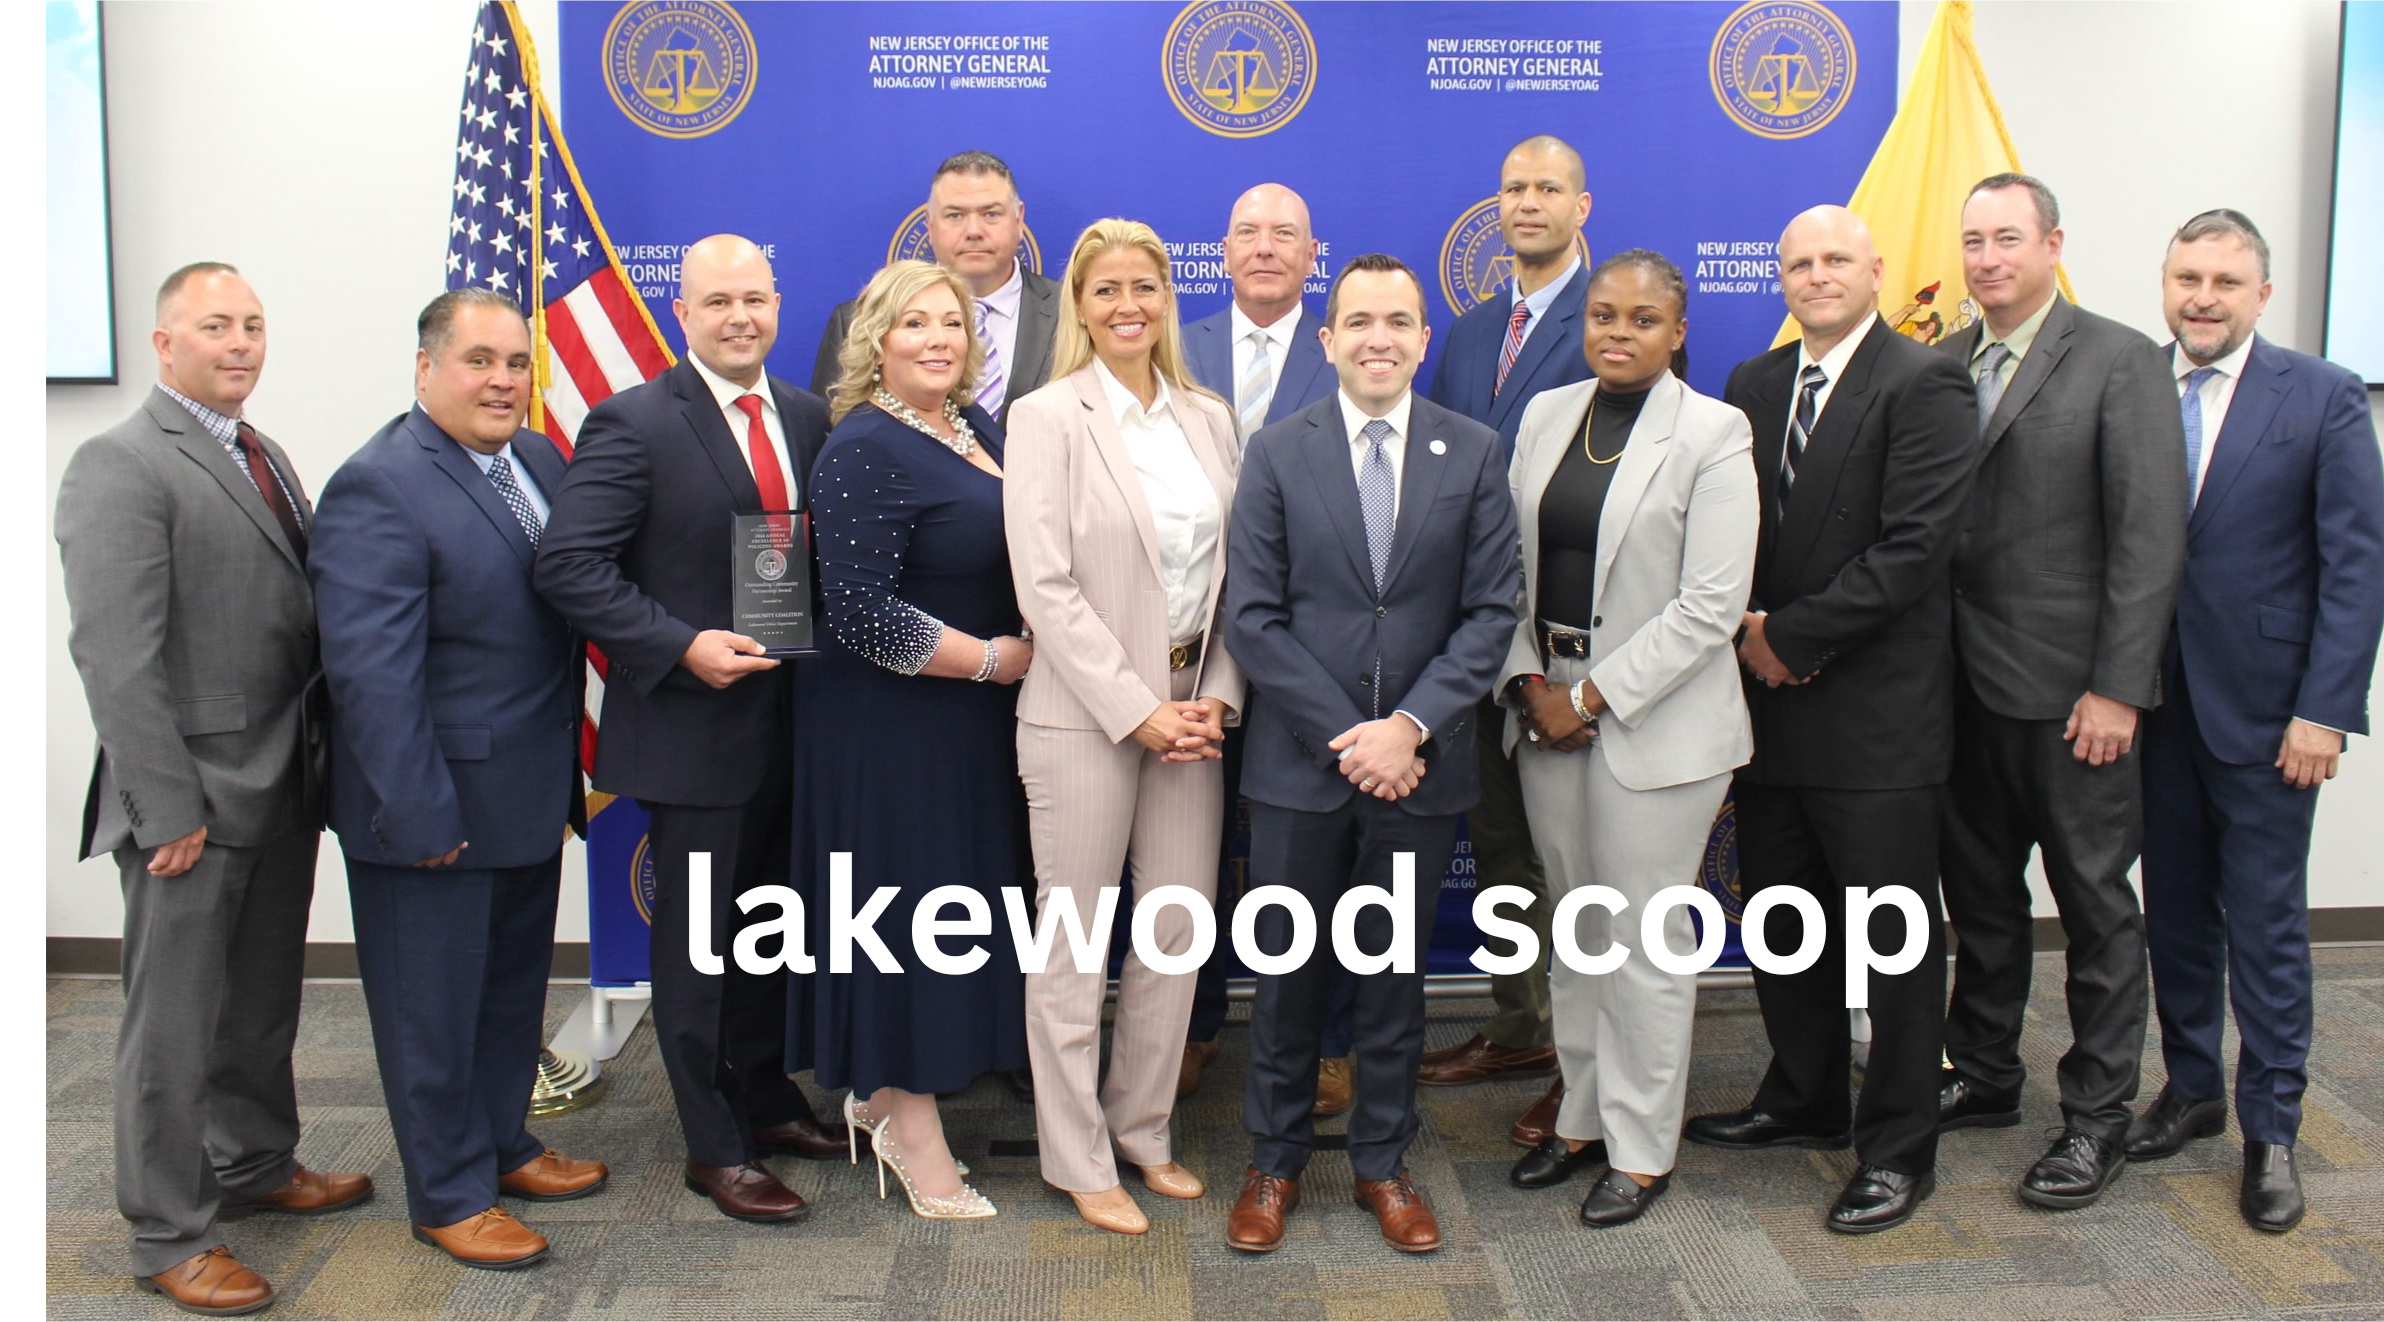 lakewood scoop